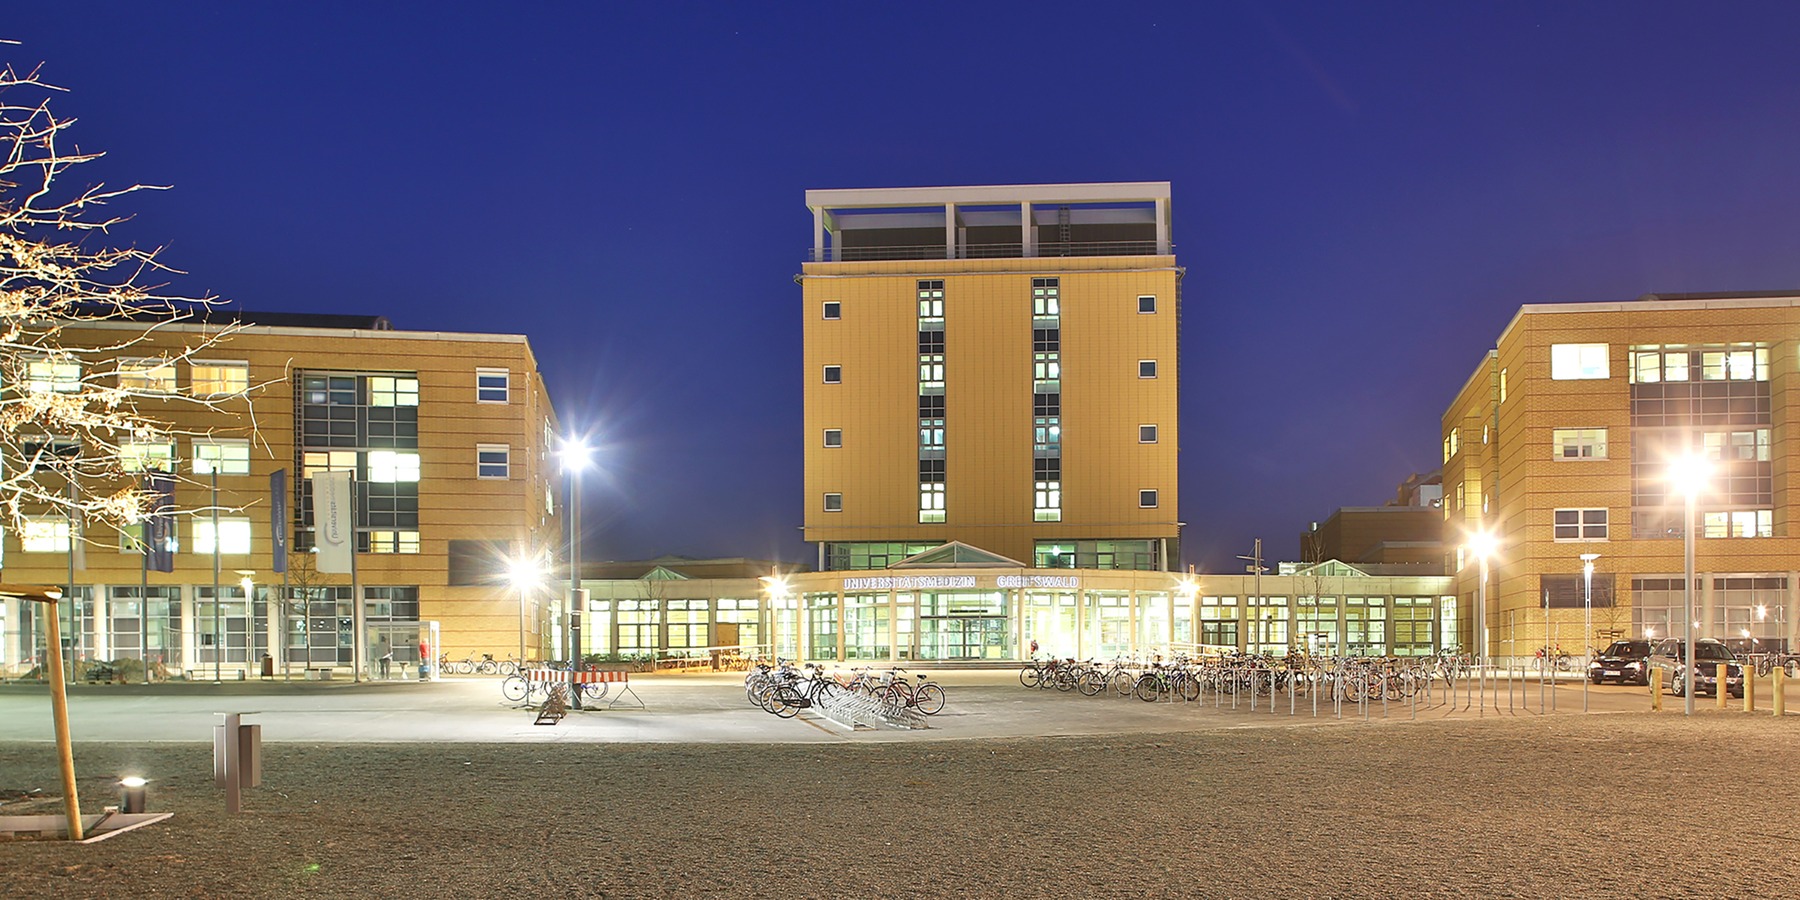 Blick auf den Haupteingangsbereich des Universitätsklinikums mit dem zentralen DZ 7 und dem angrenzenden 1. (links) und 2. (rechts) Bauabschnitt © 2013 HWP Planungsgesellschaft mbH, Stuttgart